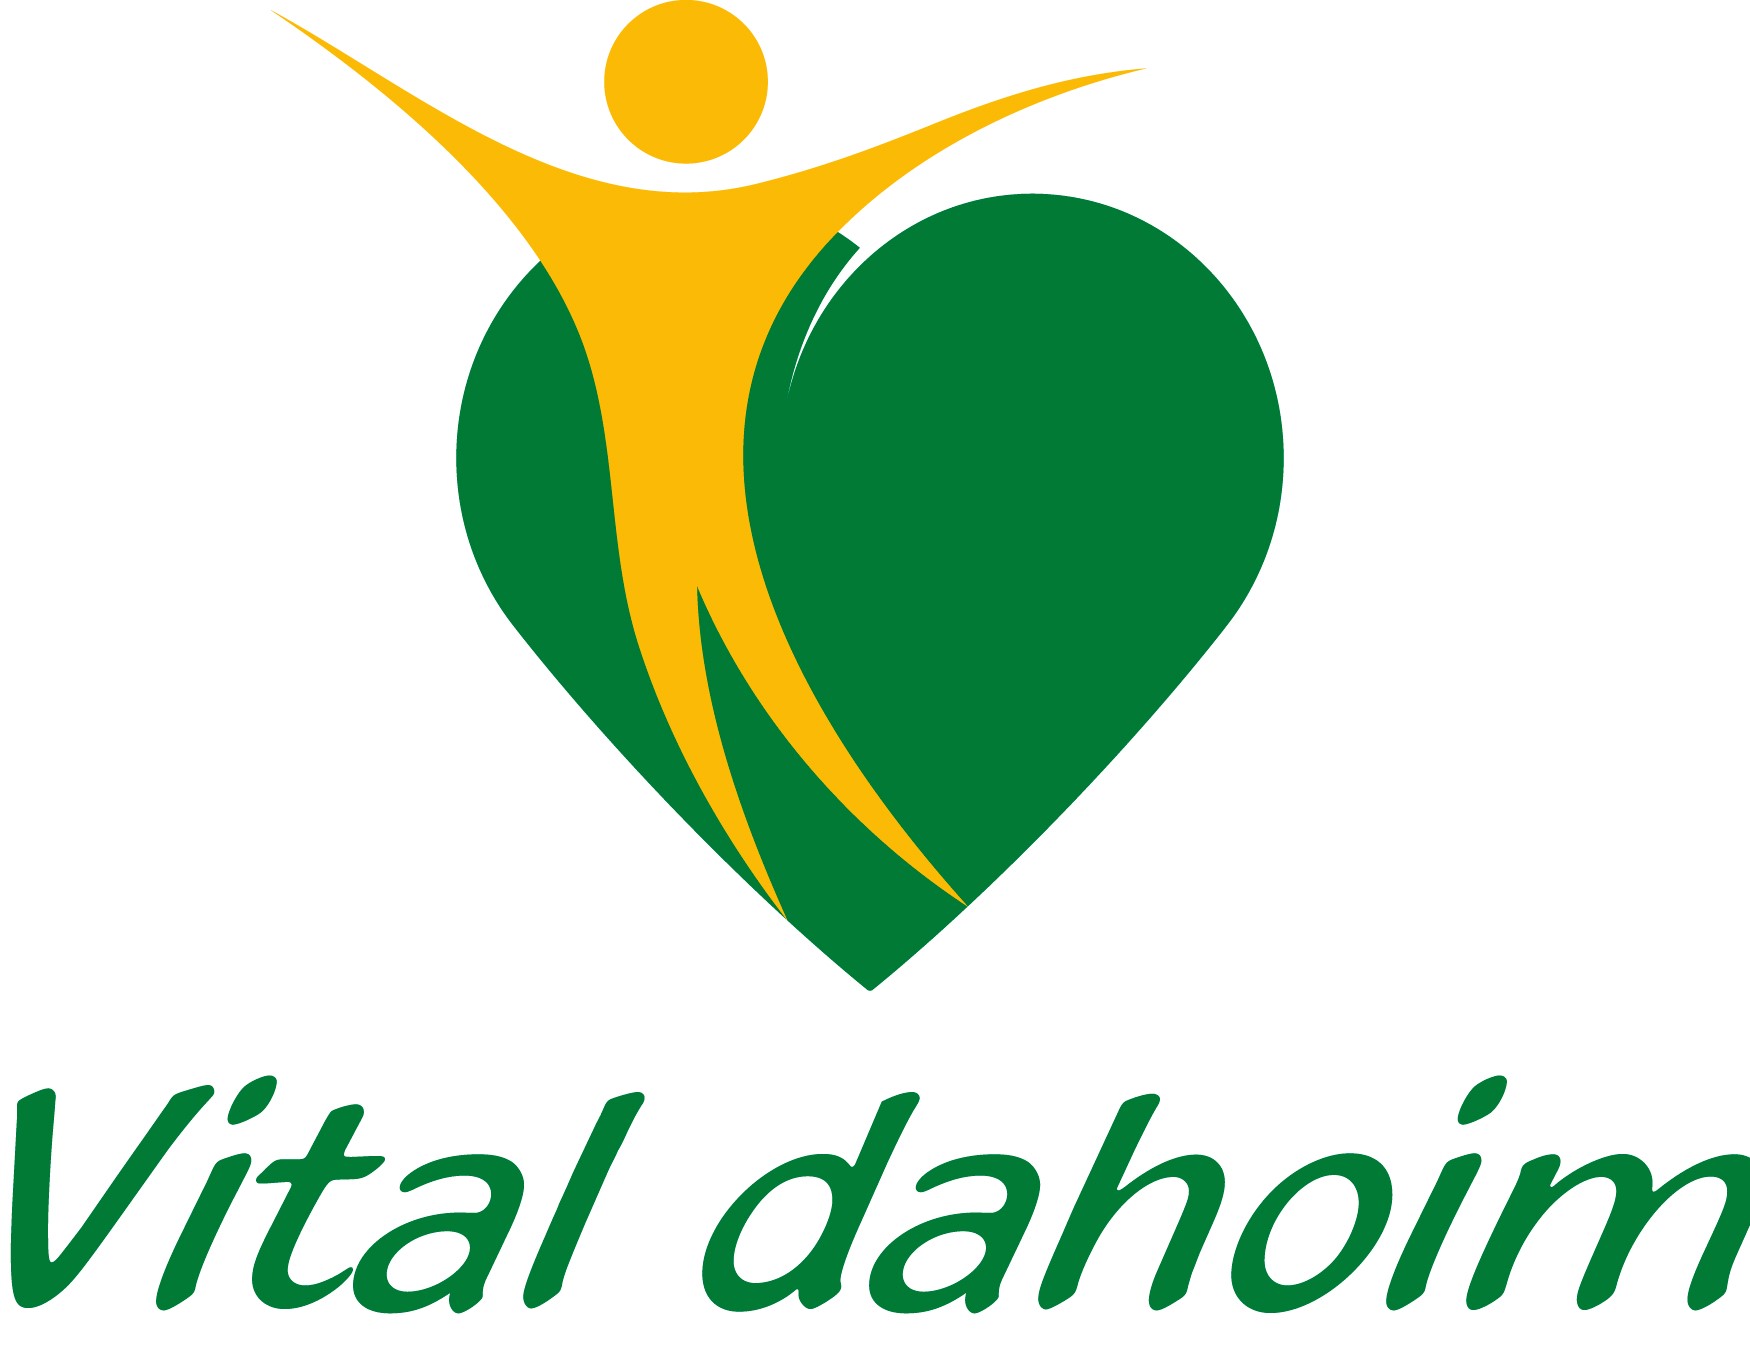 Vital_dahoim_Logo_01_allg.jpg